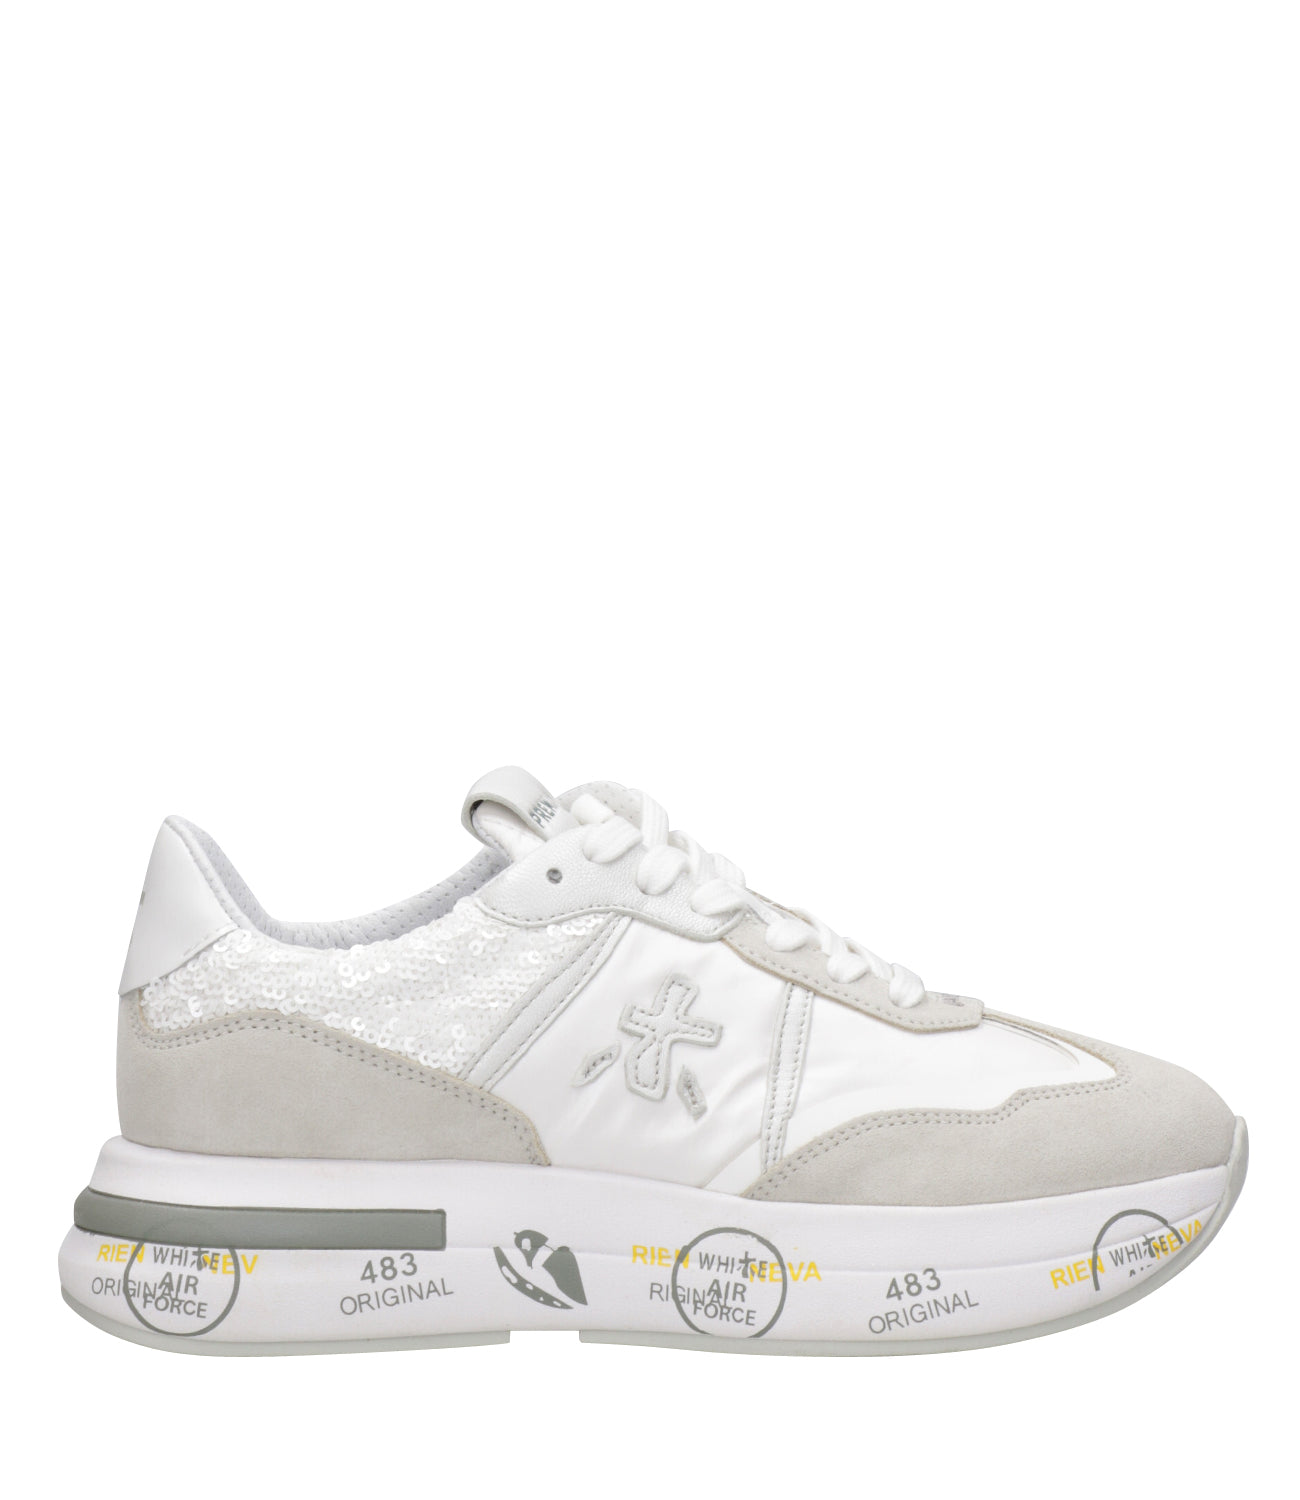 Premiata | Cassie 6346 White and Gray Sneakers